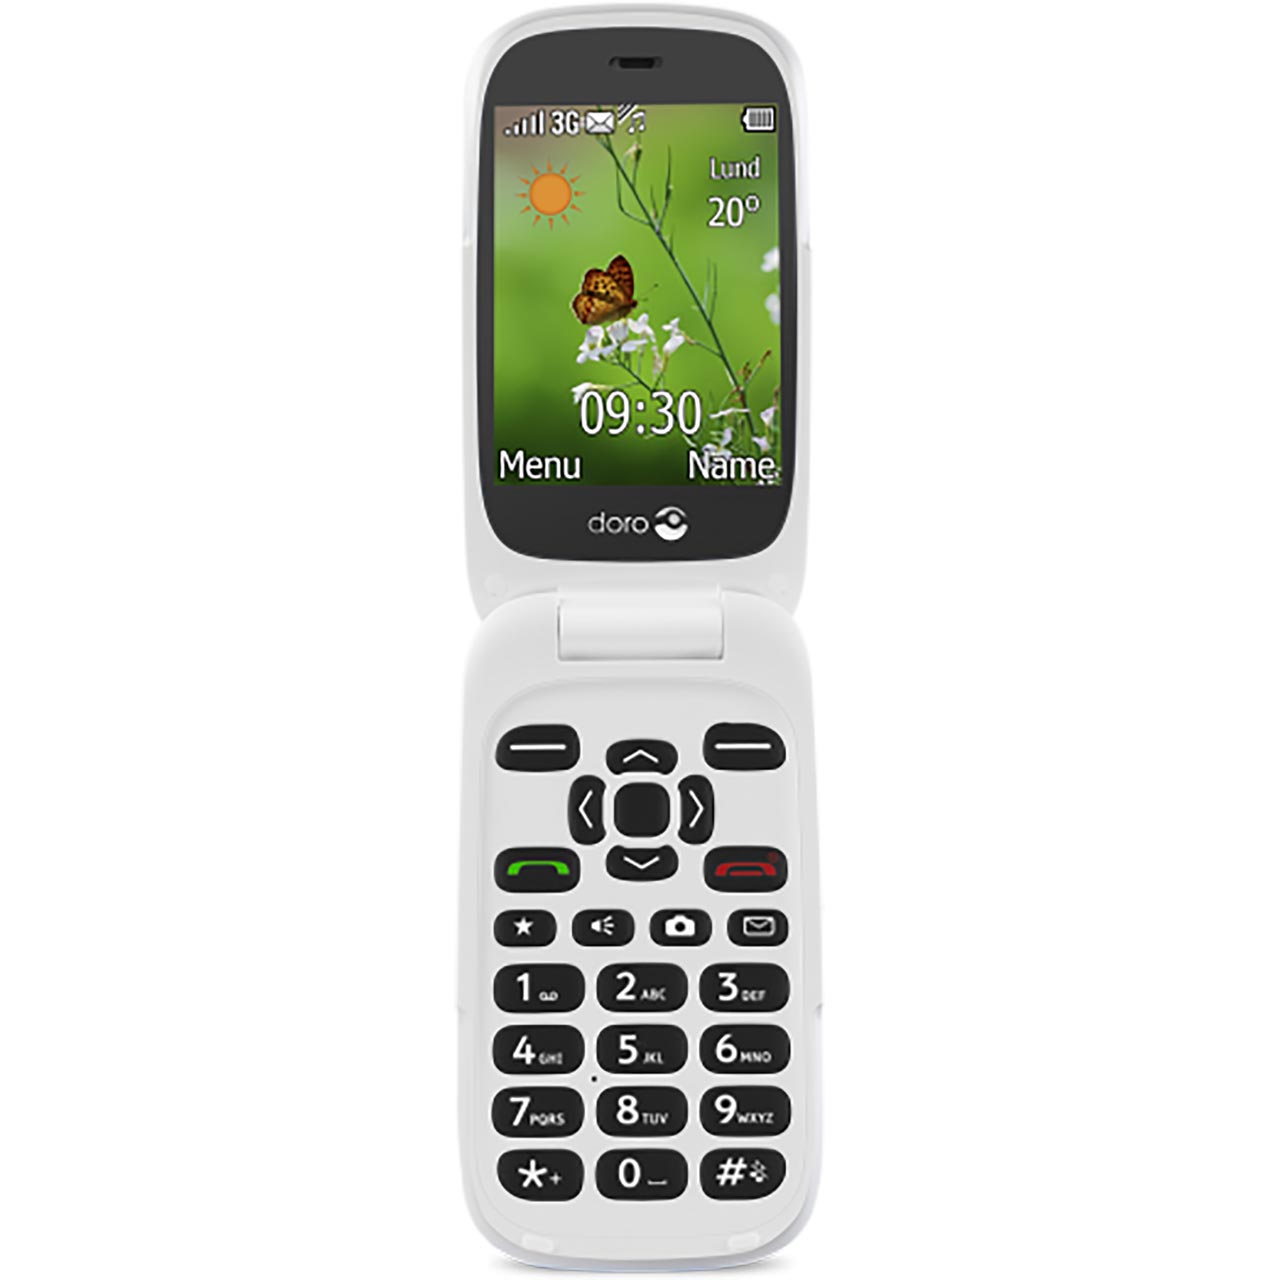 Doro 6530 Flip Phone In Black Review